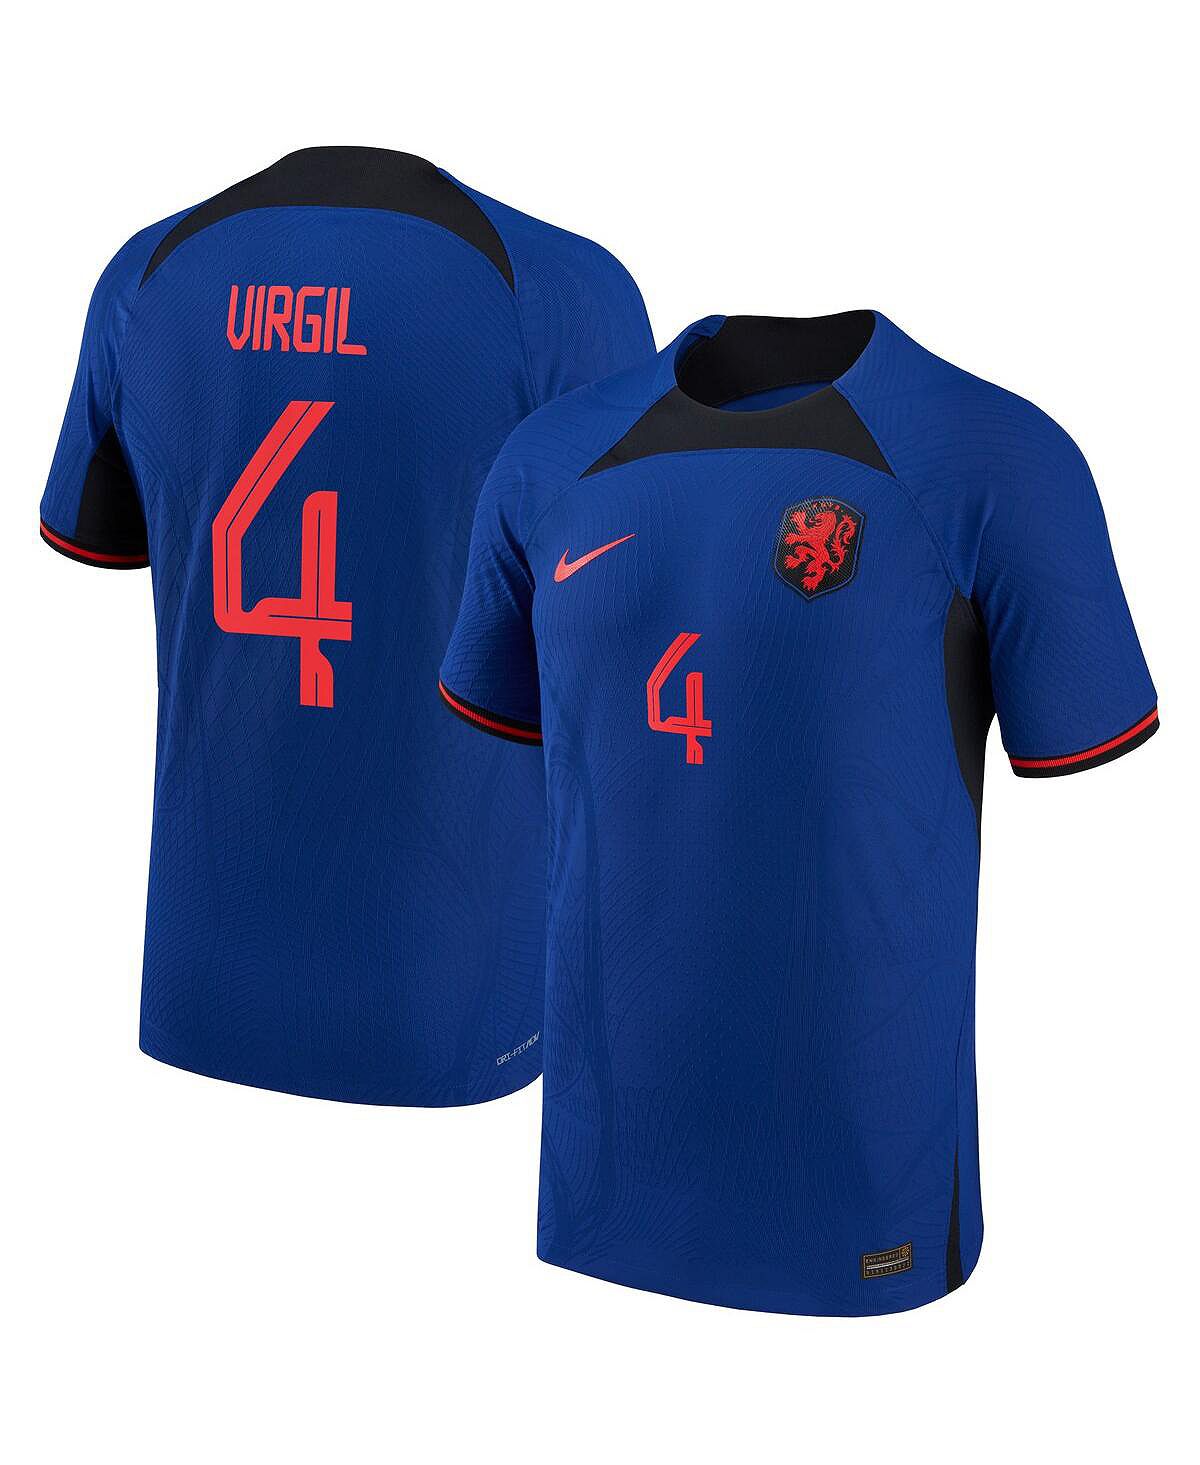 Мужская футболка virgil van dijk blue, национальная сборная нидерландов 2022/23, выездная форма vapor match, аутентичная футболка игрока Nike, синий пауэрбанк камень заряд бодрости на 2022 год